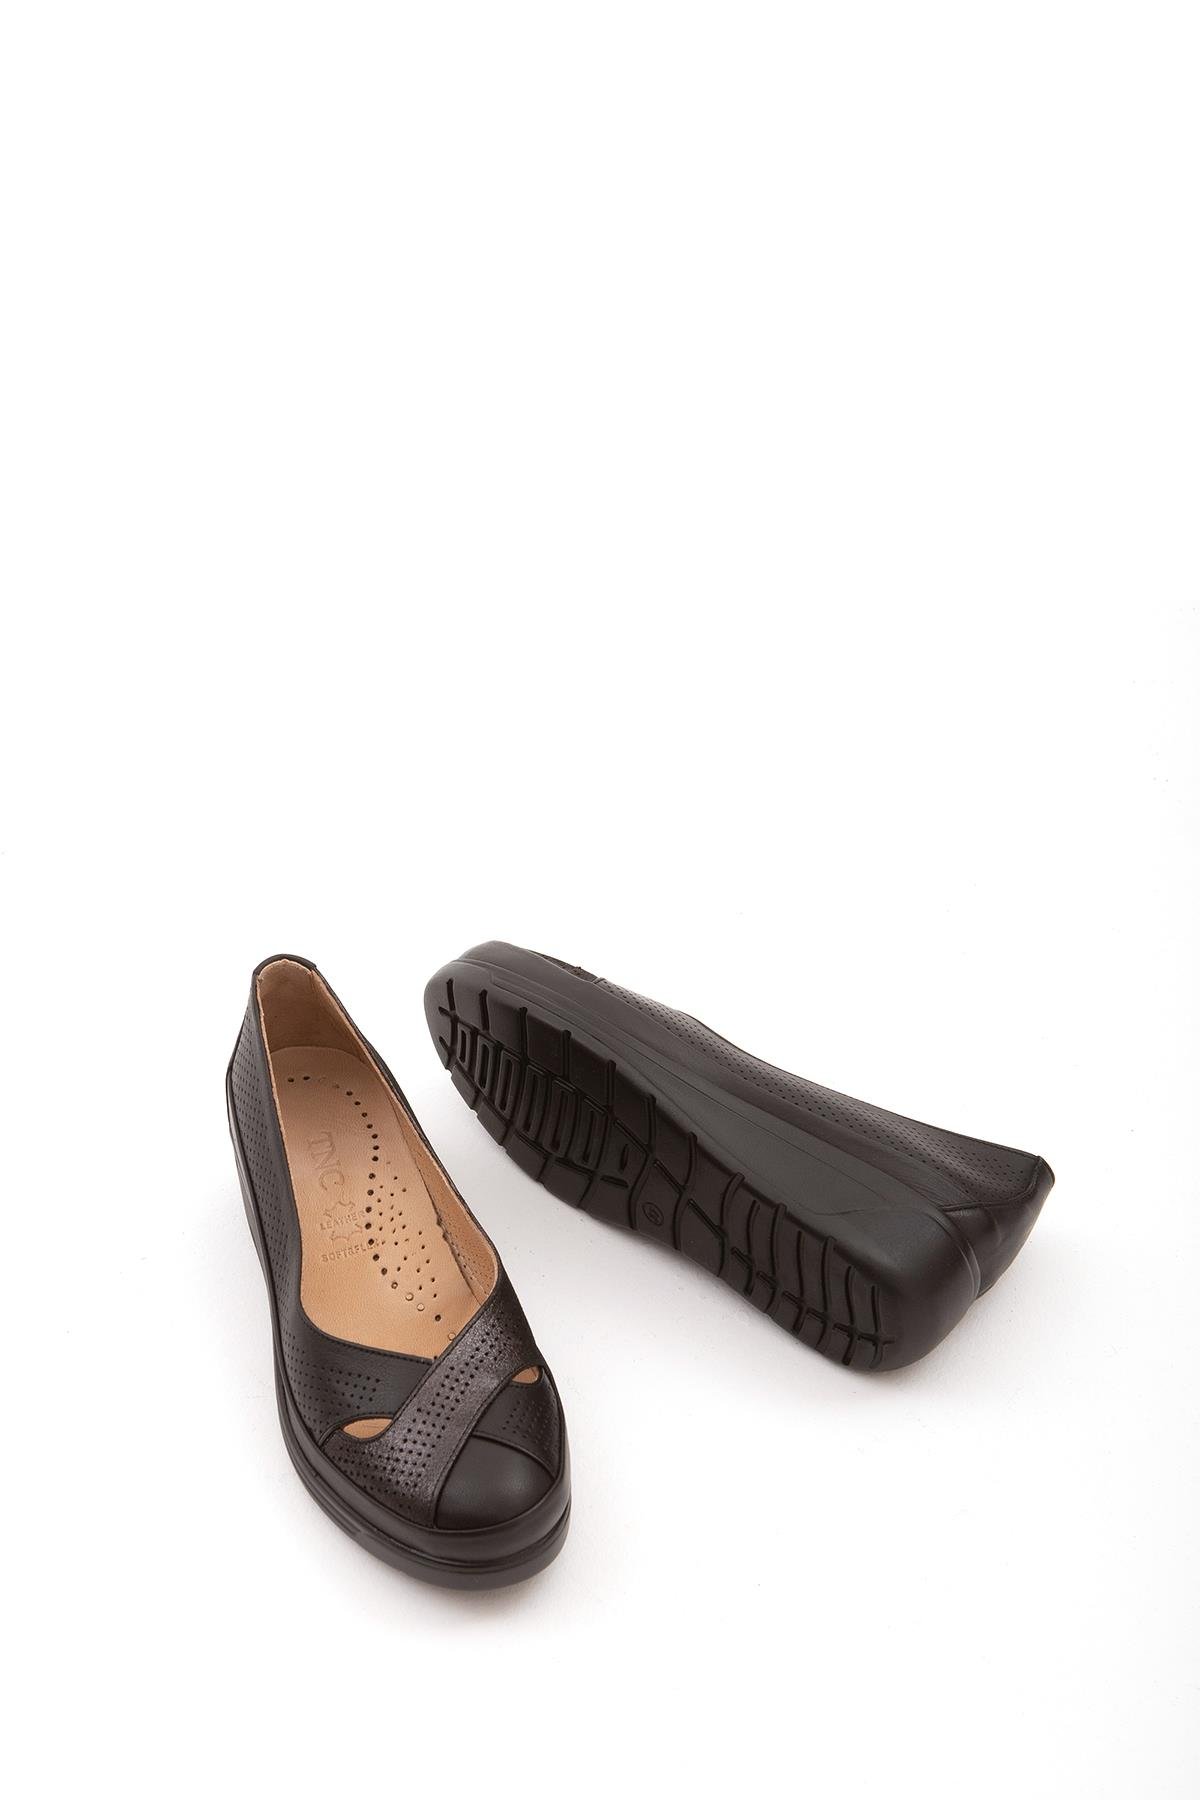 Tamer Tanca Kadın Hakiki Deri Siyah Comfort Ayakkabı